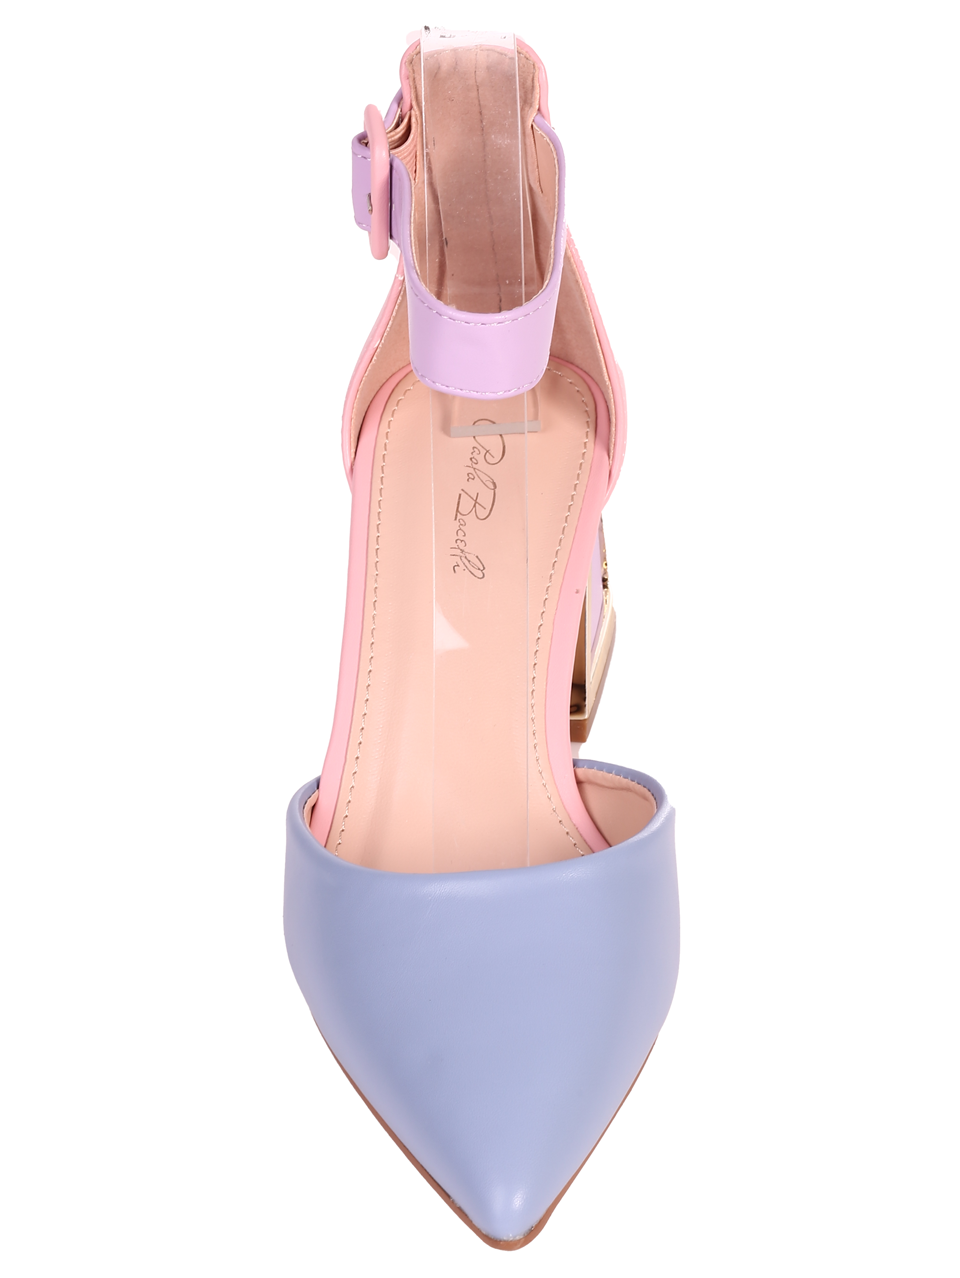 Елегантни дамски обувки на ток в синьо/лилав цвят 3M-24022 colorfull